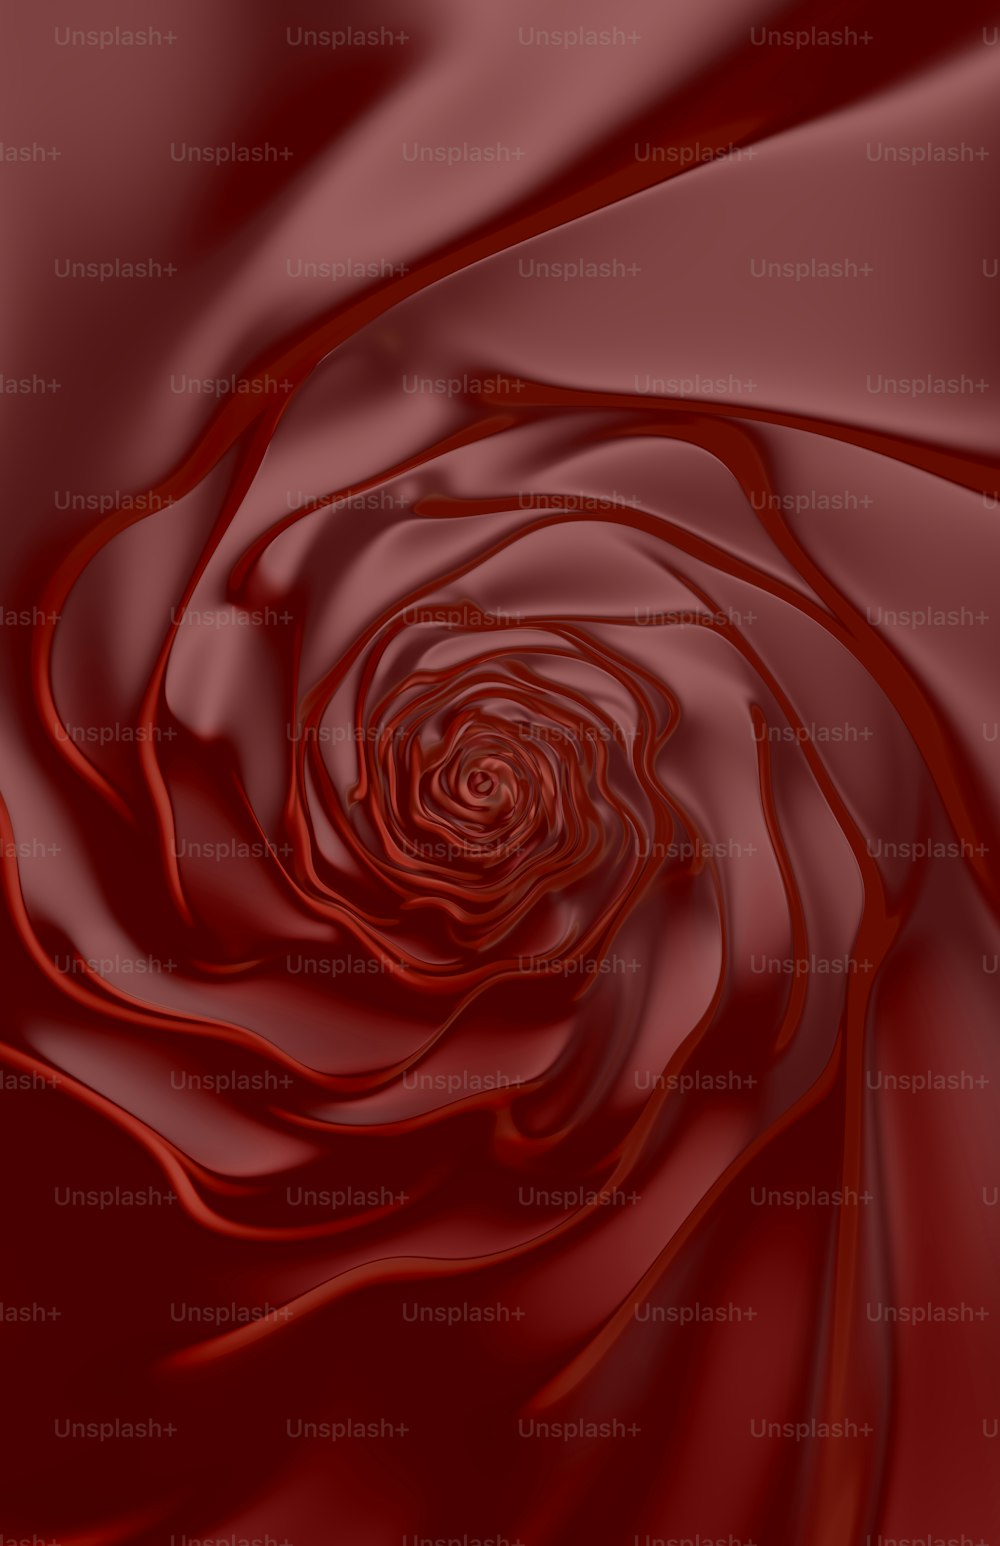 Una rosa roja que está en medio de una imagen